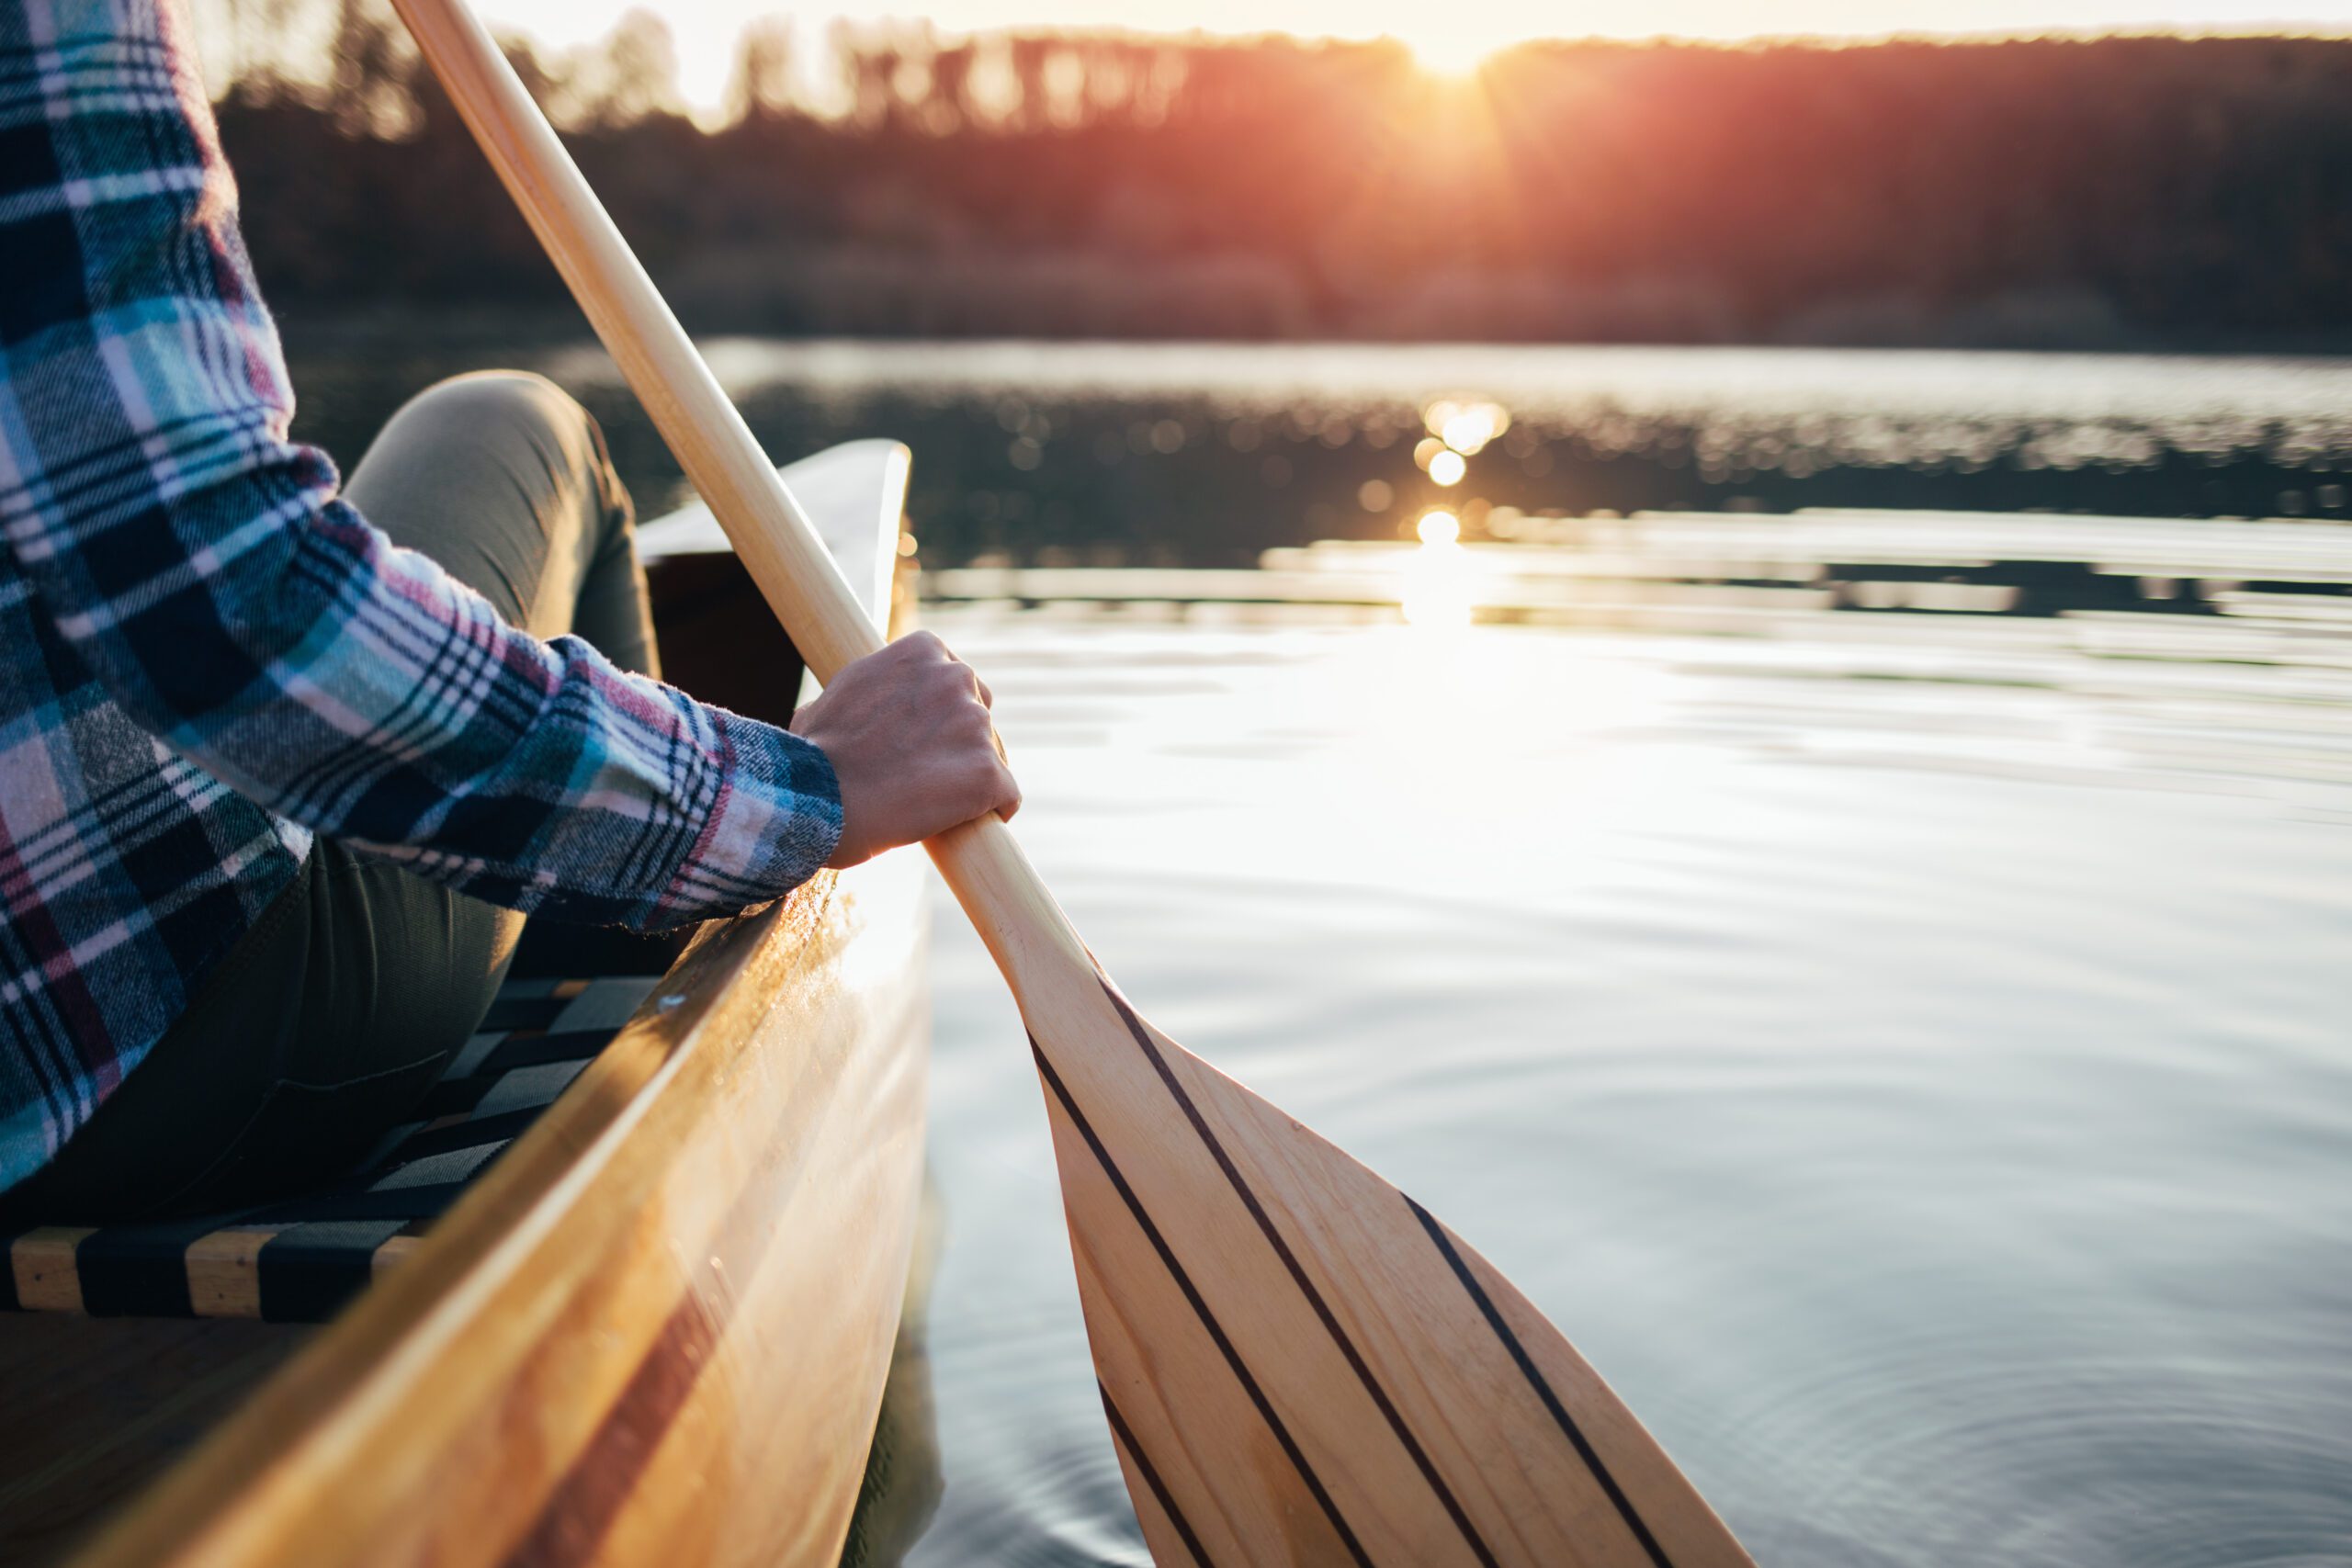 life insurance for canoeing